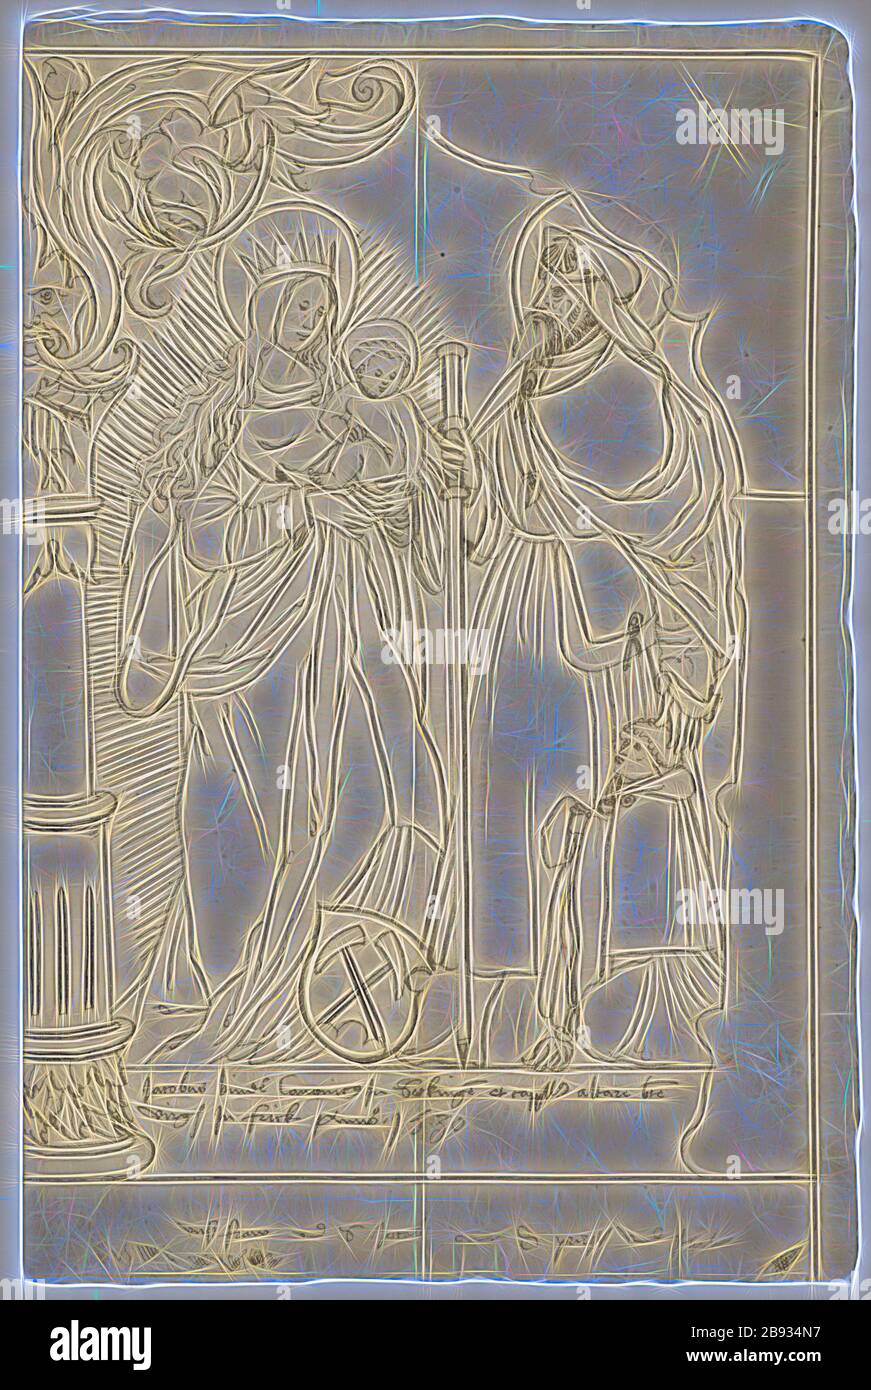 Lacerazione a fettine con Maria e bambino, hl., Jakobus maggiore e donatore inginocchiato, sotto lo stemma Bind, 1530, penna in nero, disegno preliminare con matita nera, foglio: 32,5 x 21,5 cm |, immagine: 29,2 x 20,4 cm, U. inscritti nel cartouche: jacobus lega canonicus jn Sackinge et cappl ... gv frick ... 1530, compresi: Vnsz fraw e jacob ..., Anonym, Schweiz, 1. Hälfte 16. JH., Reimagined by Gibon, design di calore allegro di luminosità e raggi di luce radianza. Arte classica reinventata con un tocco moderno. Fotografia ispirata al futurismo, che abbraccia l'energia dinamica della tecnologia moderna, mov Foto Stock